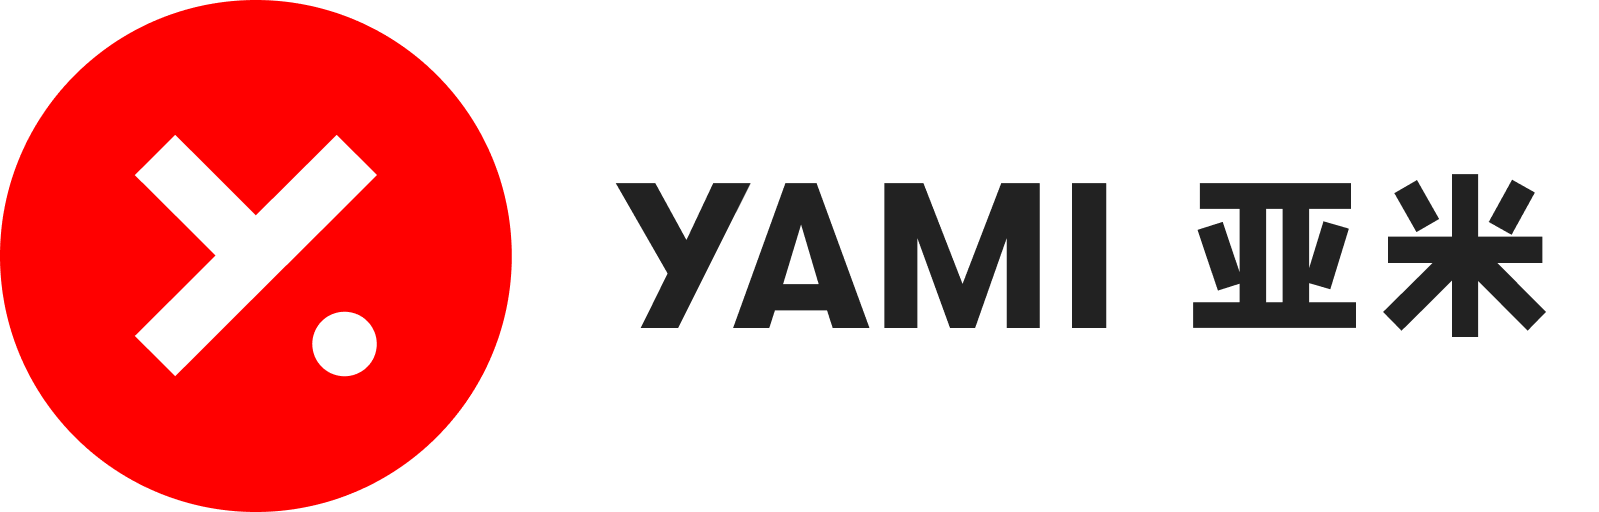 Yami رموز الخصم 